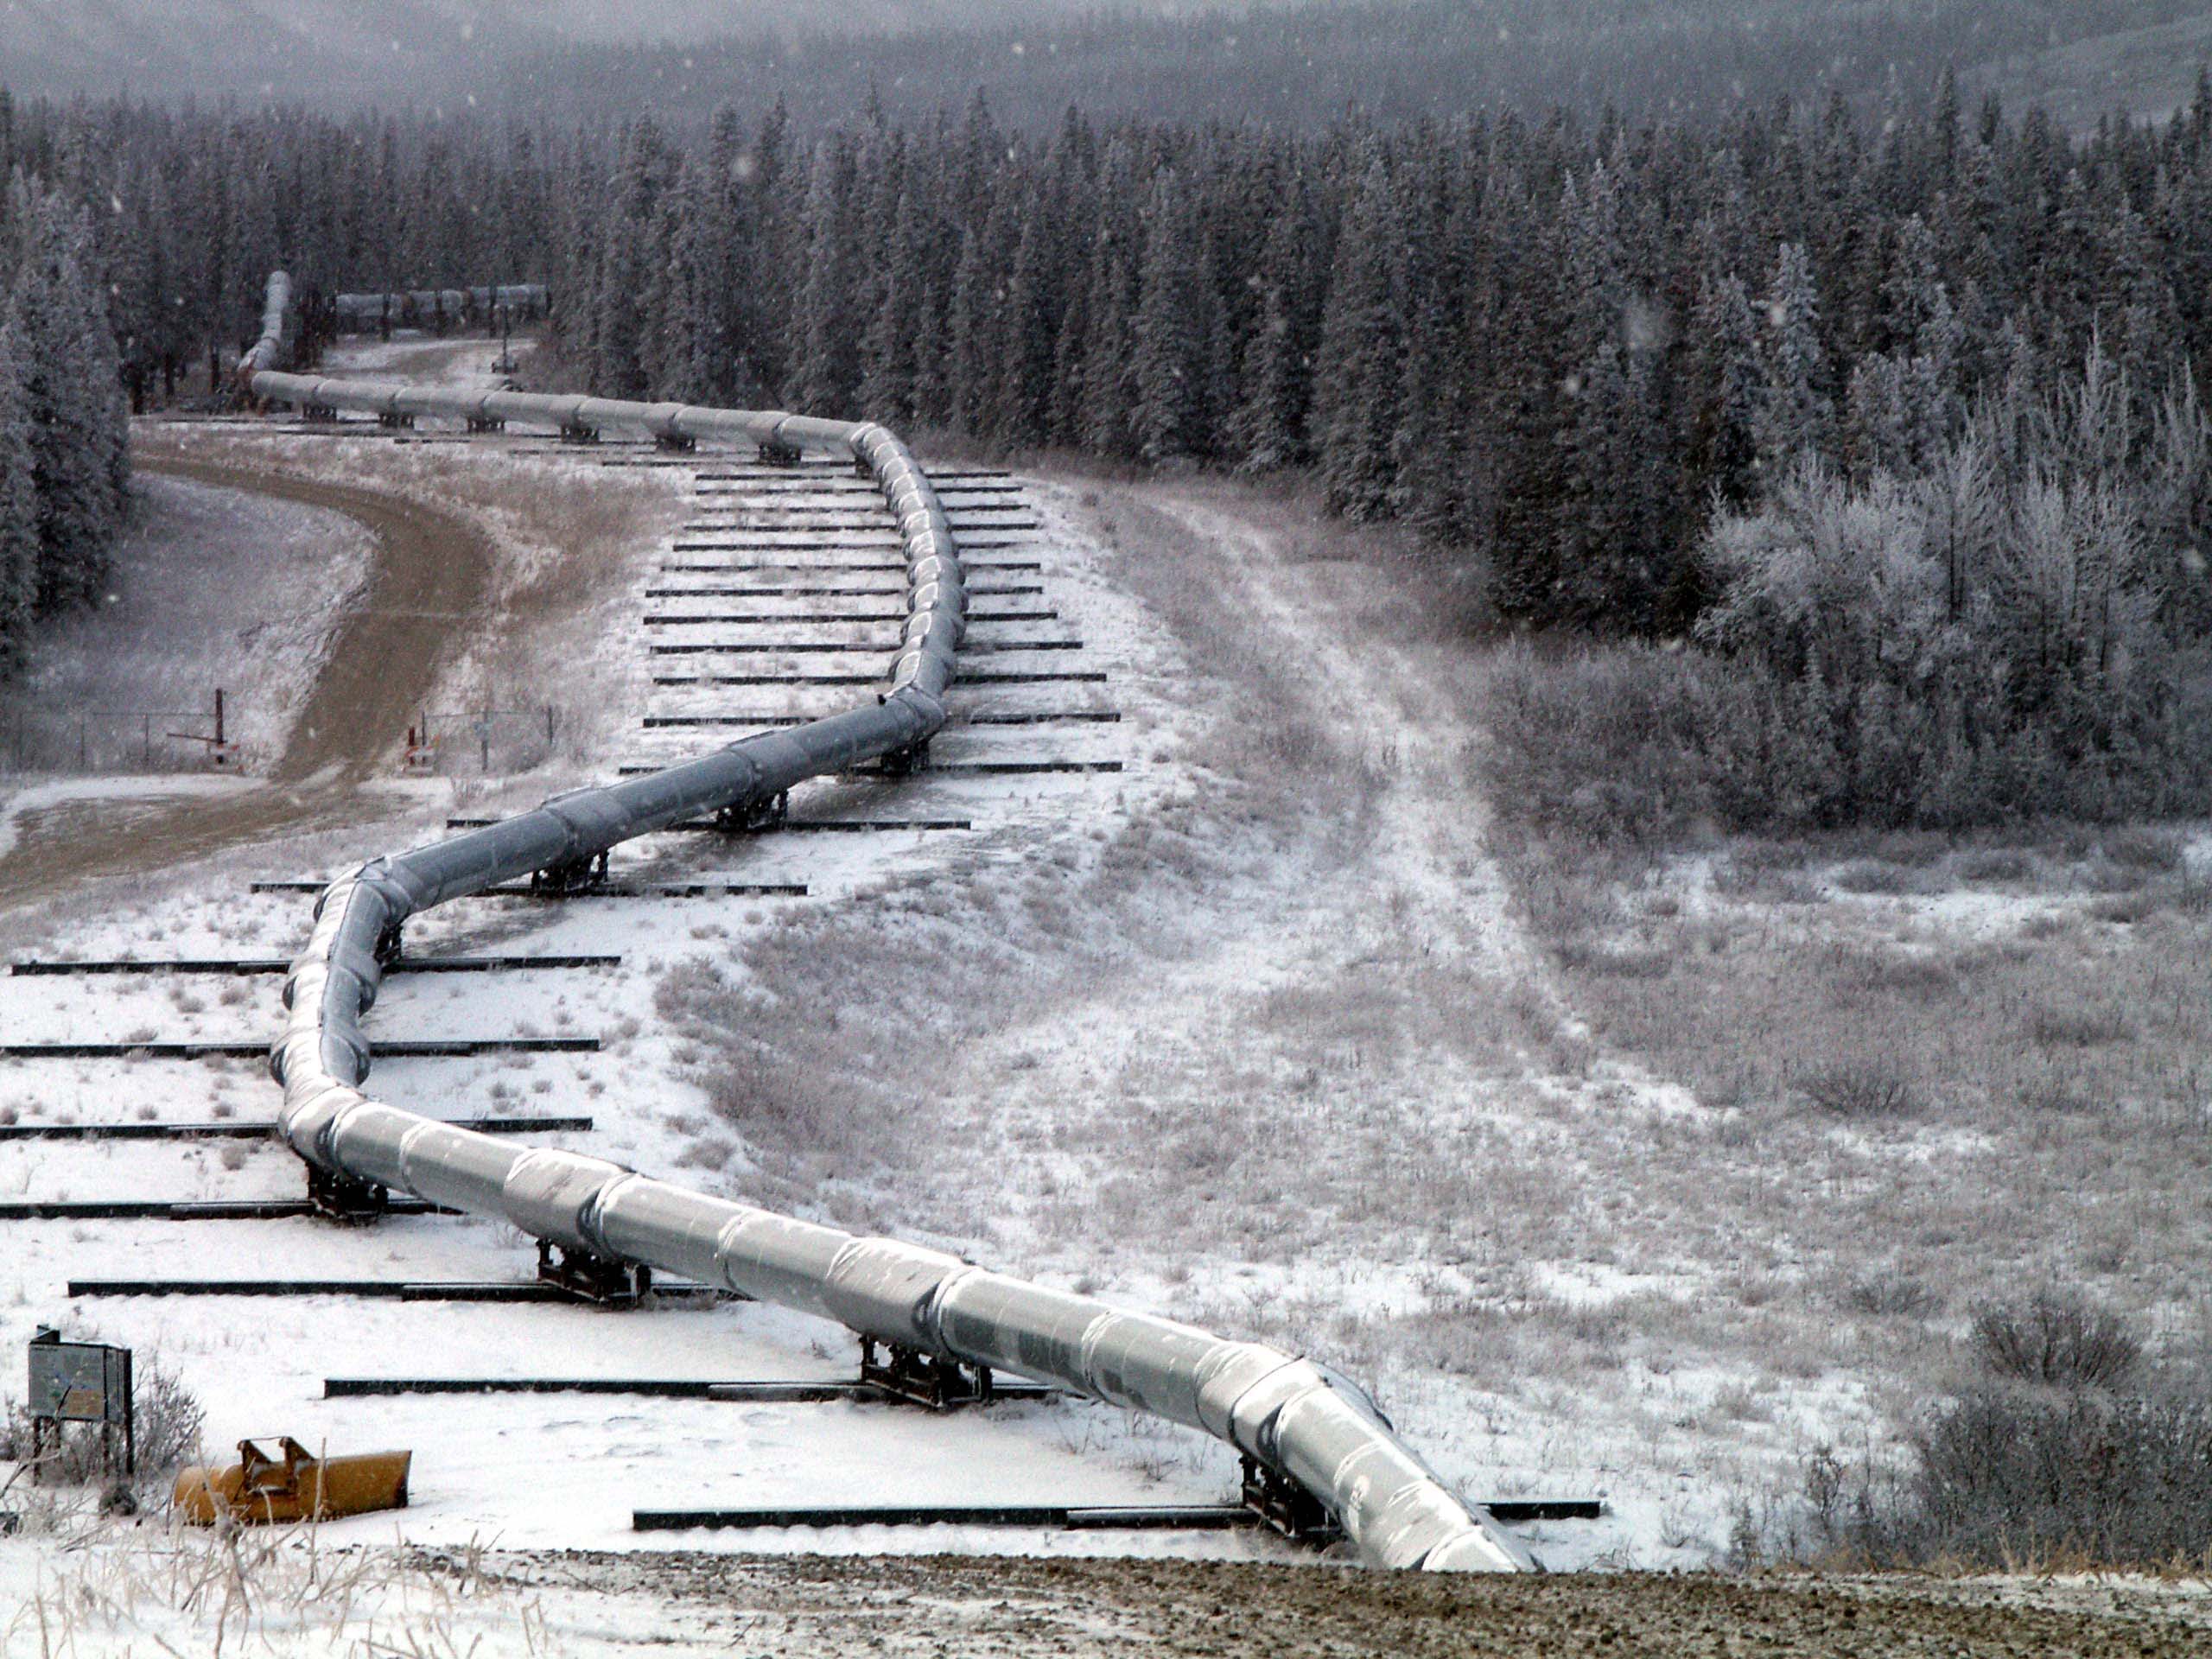 Trans_Alaska_Pipeline_Denali_fault_shift.jpg